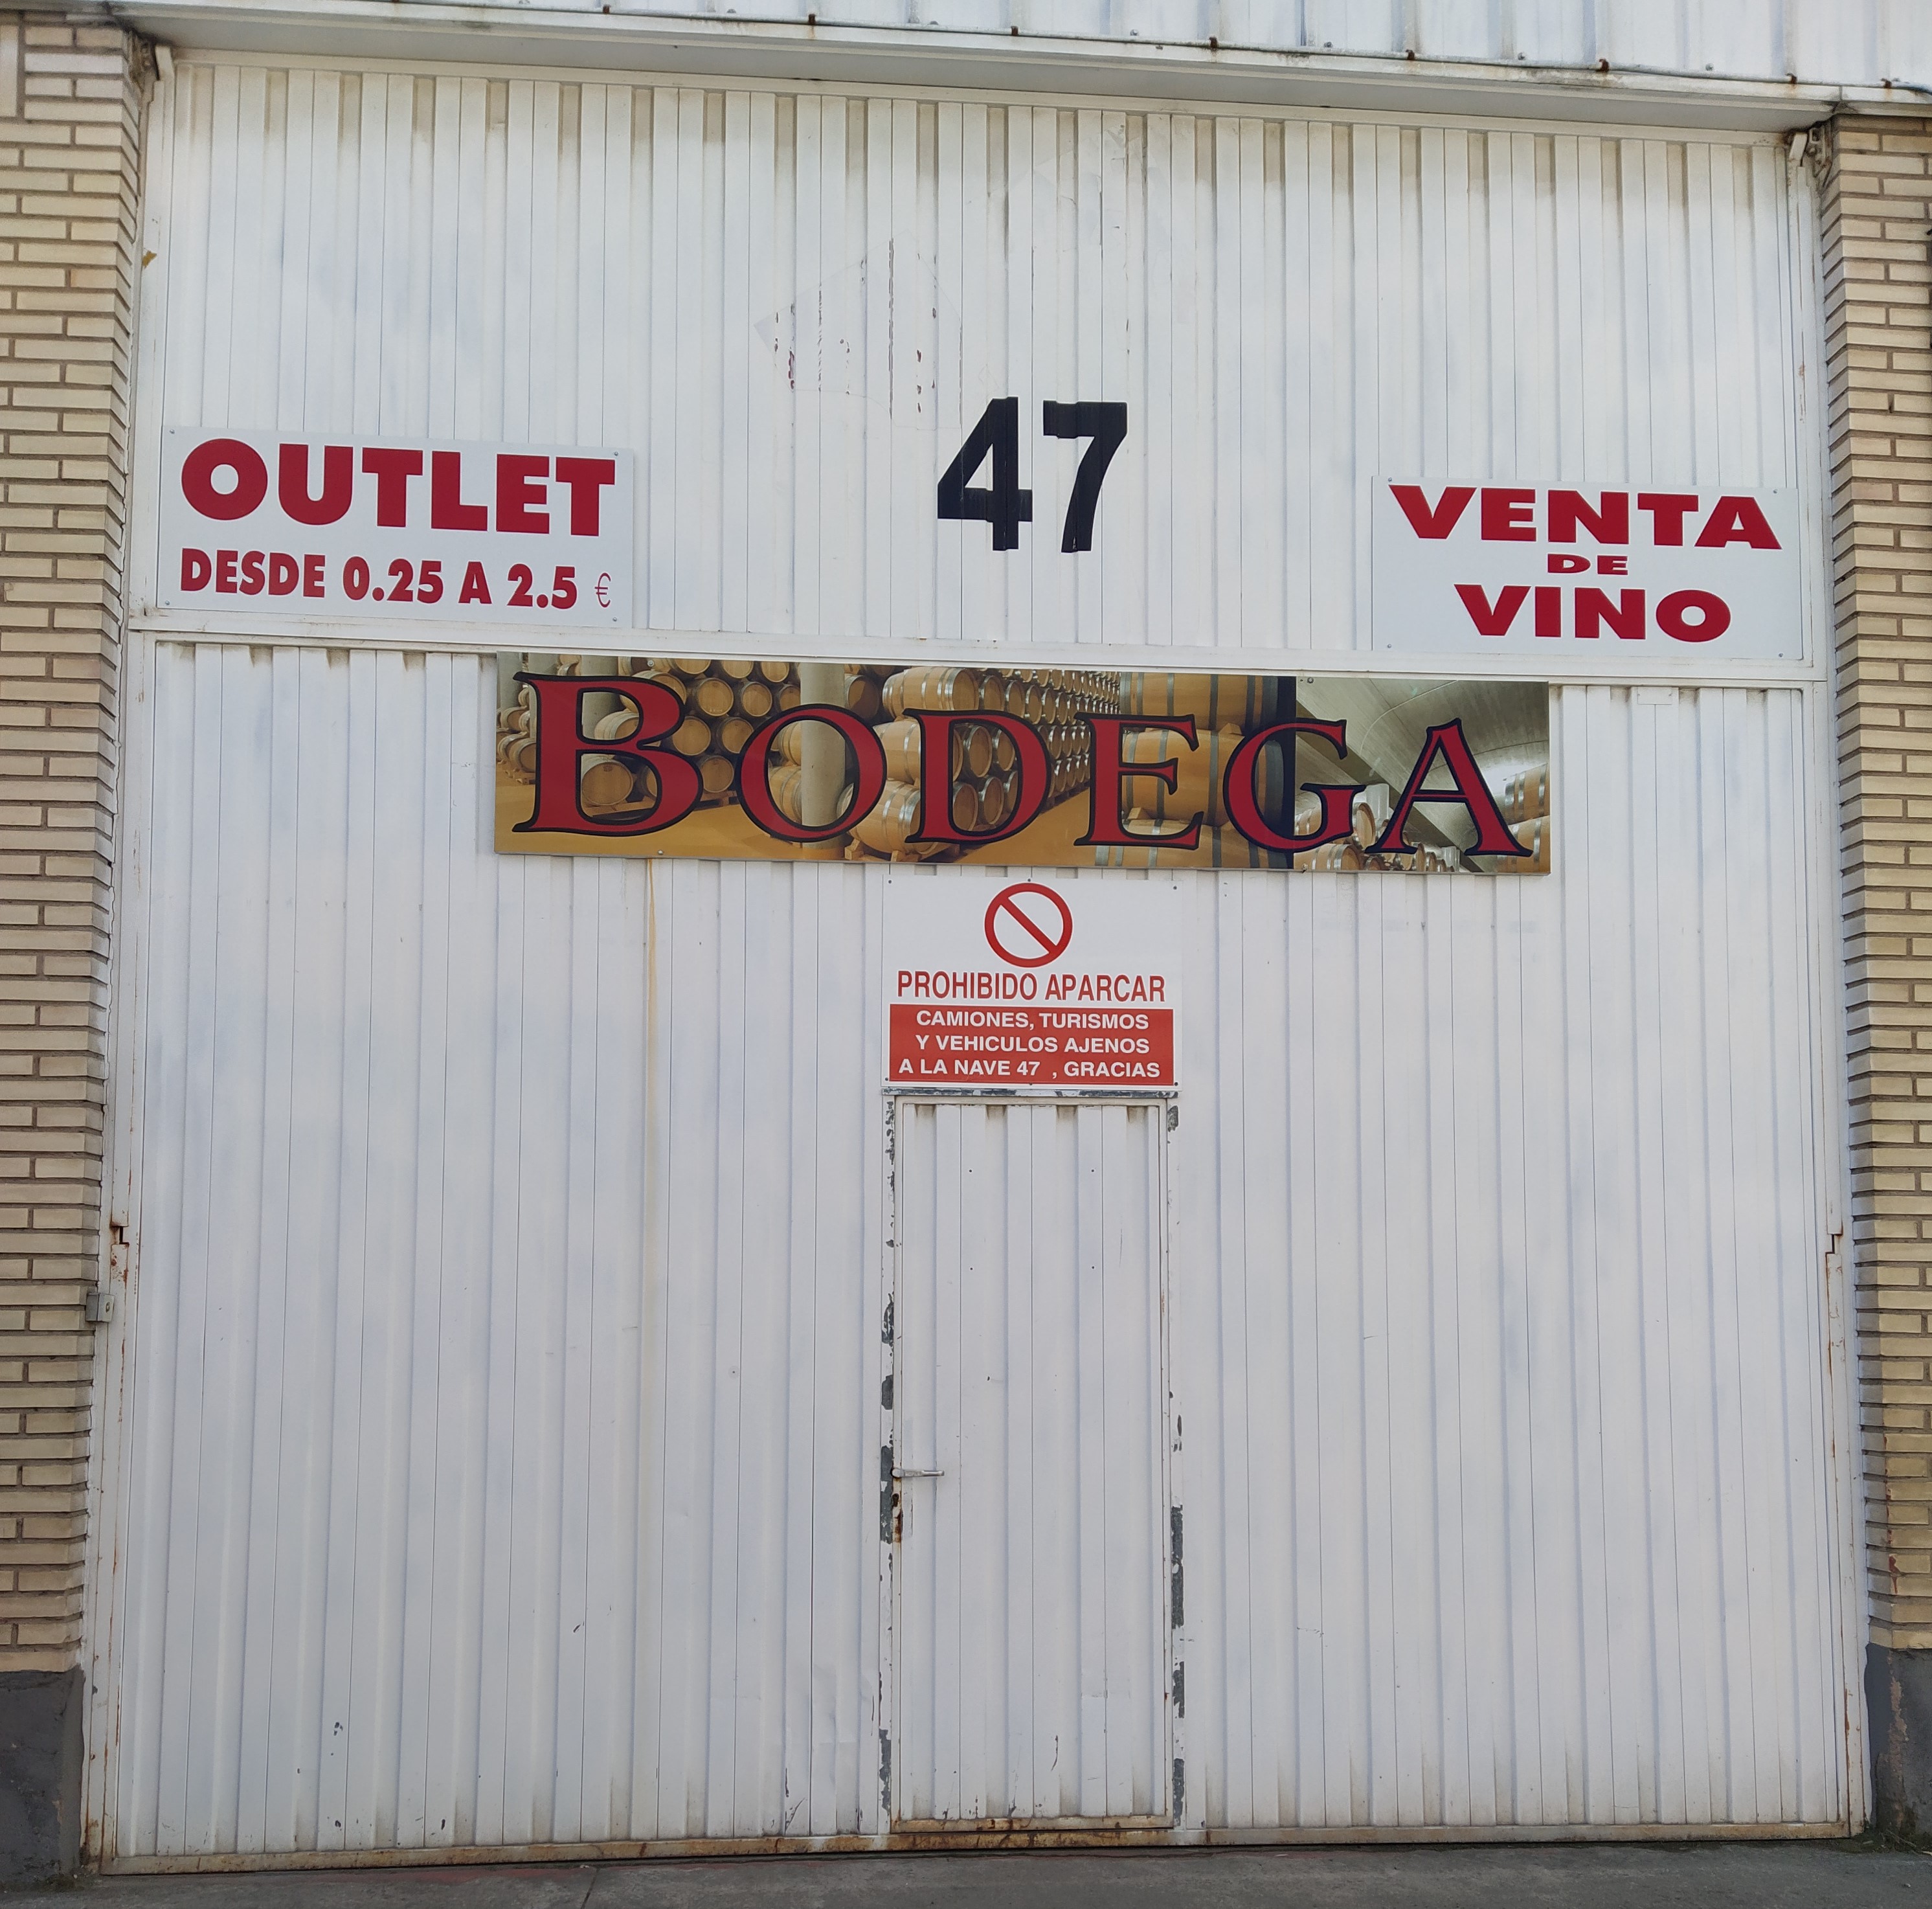 Outlet Venta De Vino